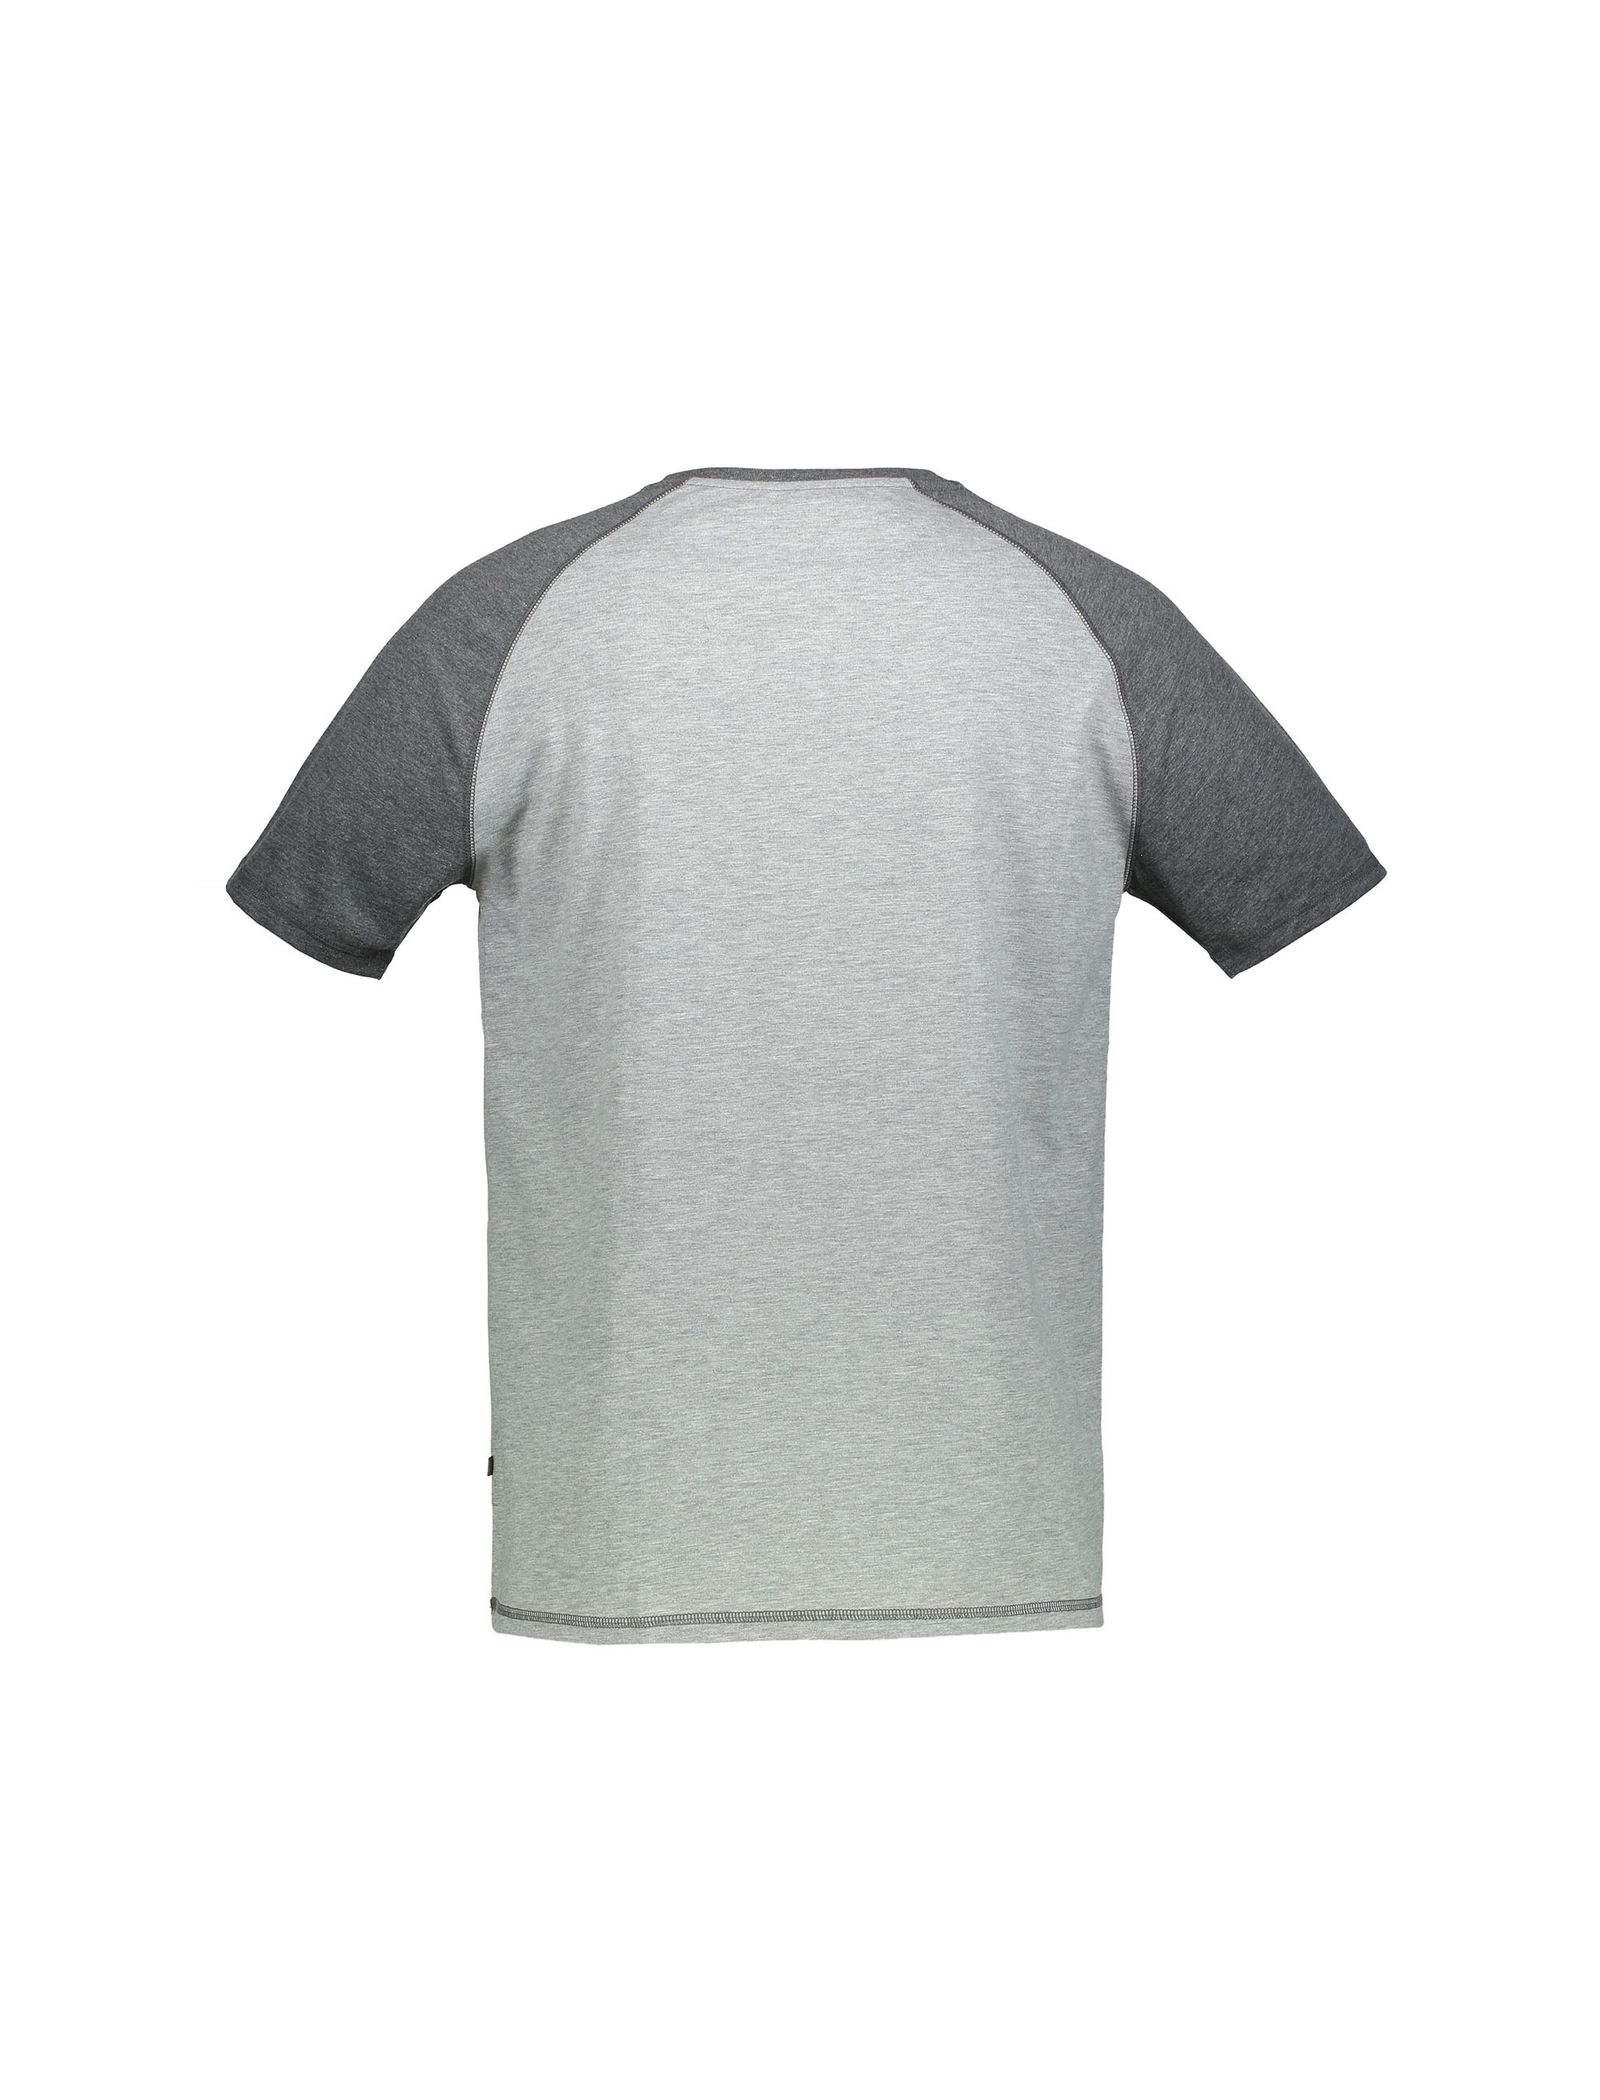 تی شرت و شلوارک راحتی نخی مردانه - سلیو - طوسي - 4